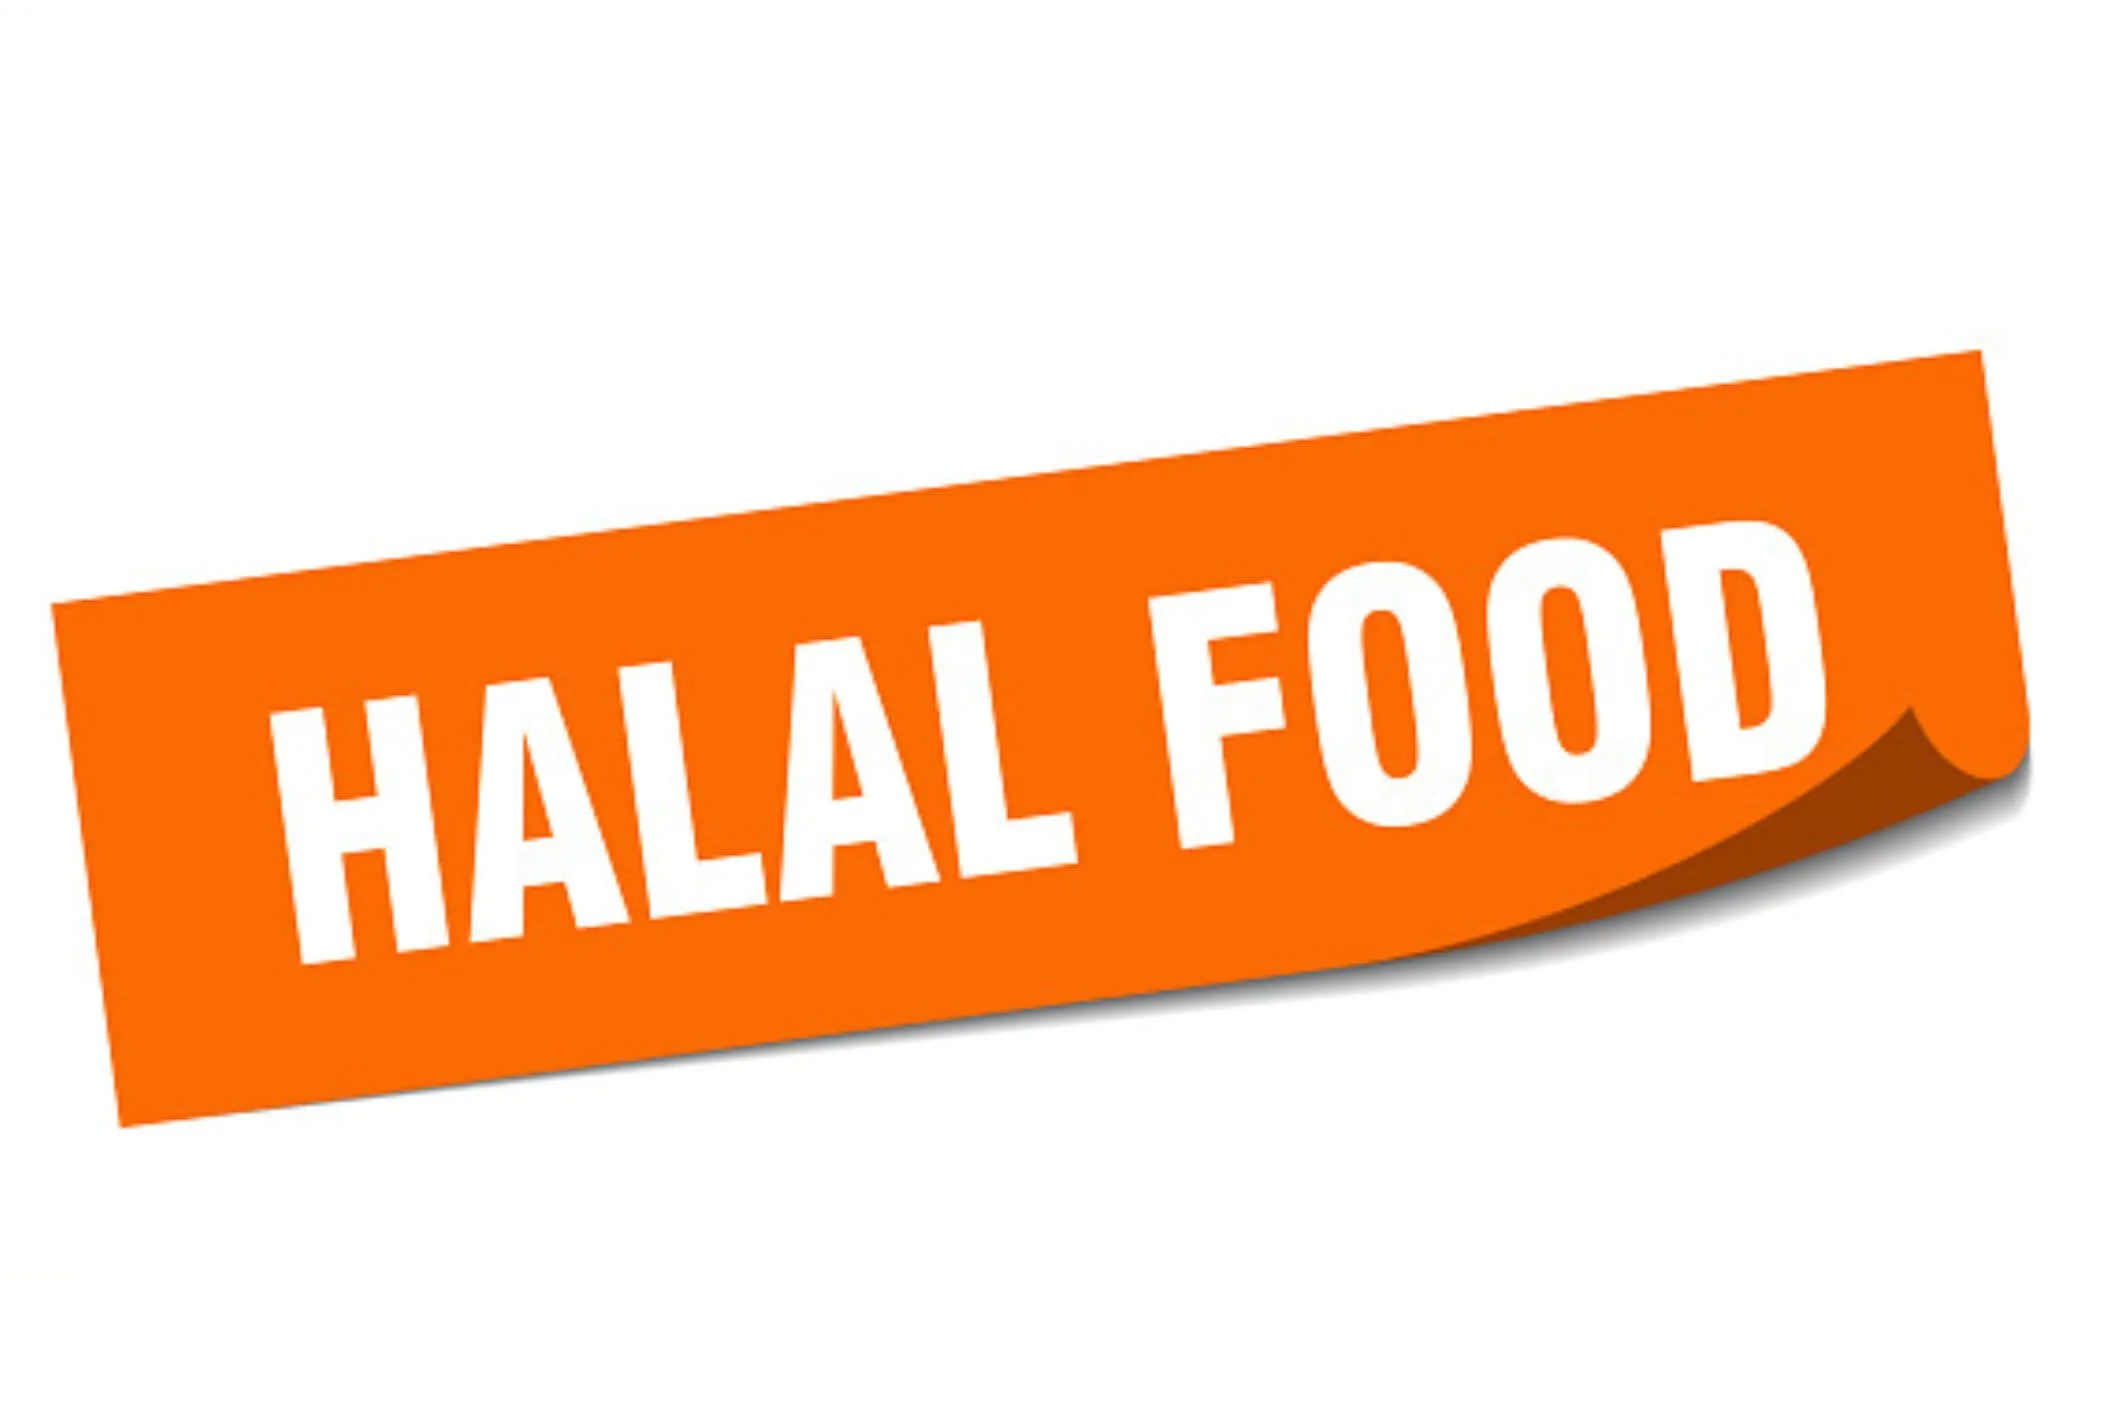 US halal food